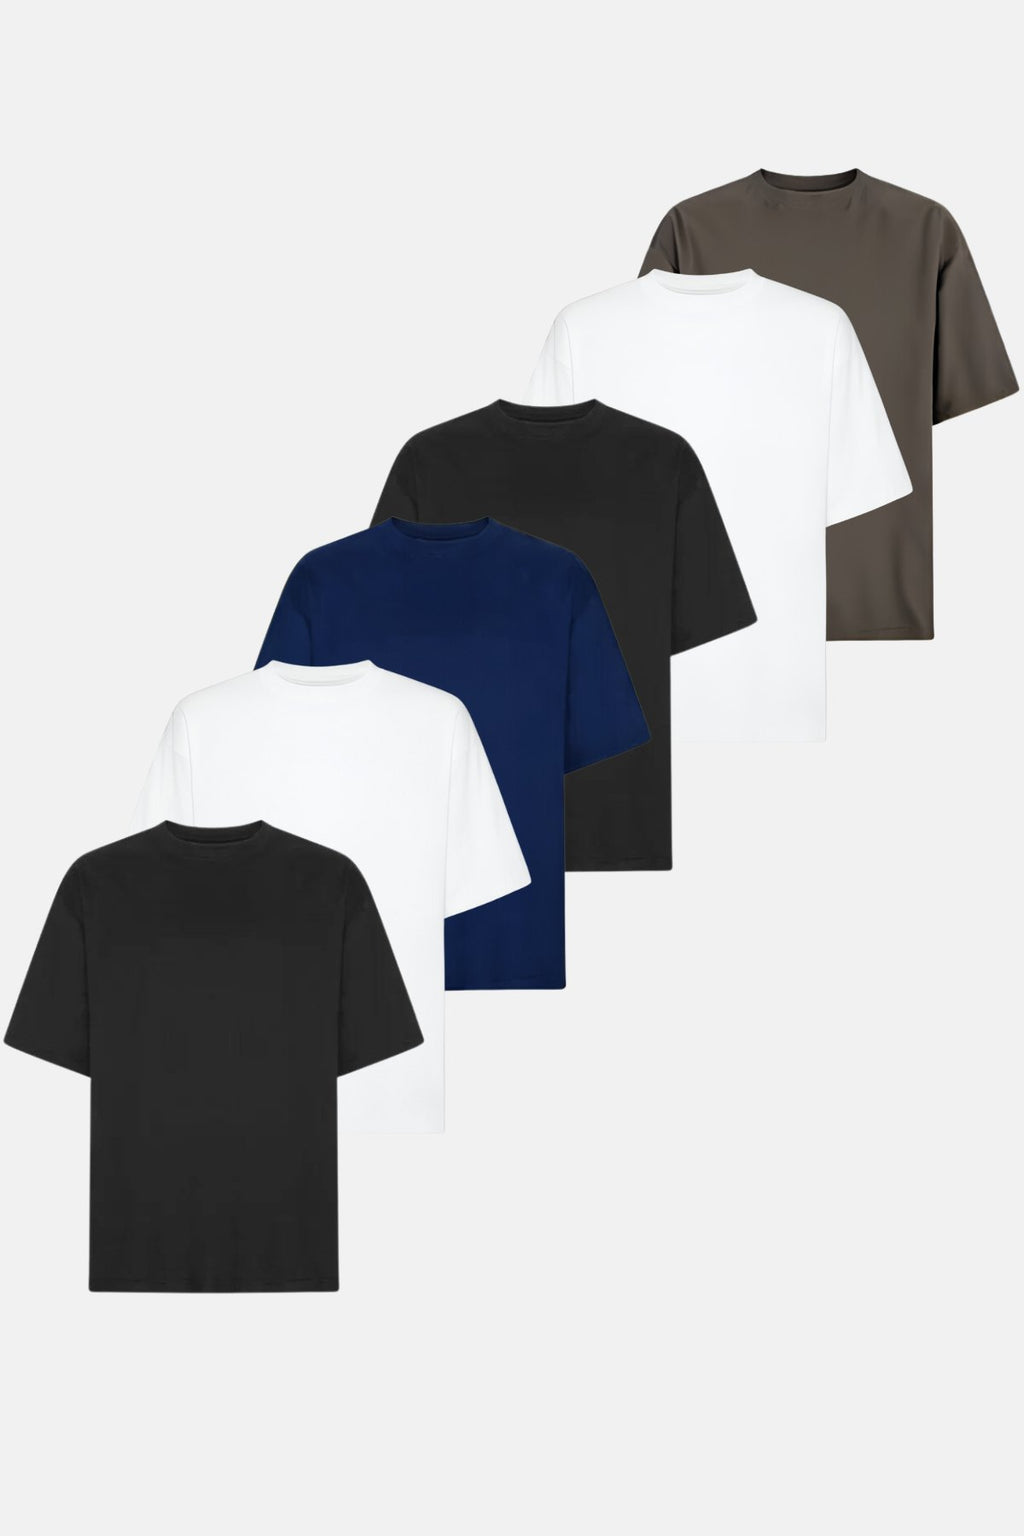 T-shirt Boxfit - Offre groupée (6 pièces)